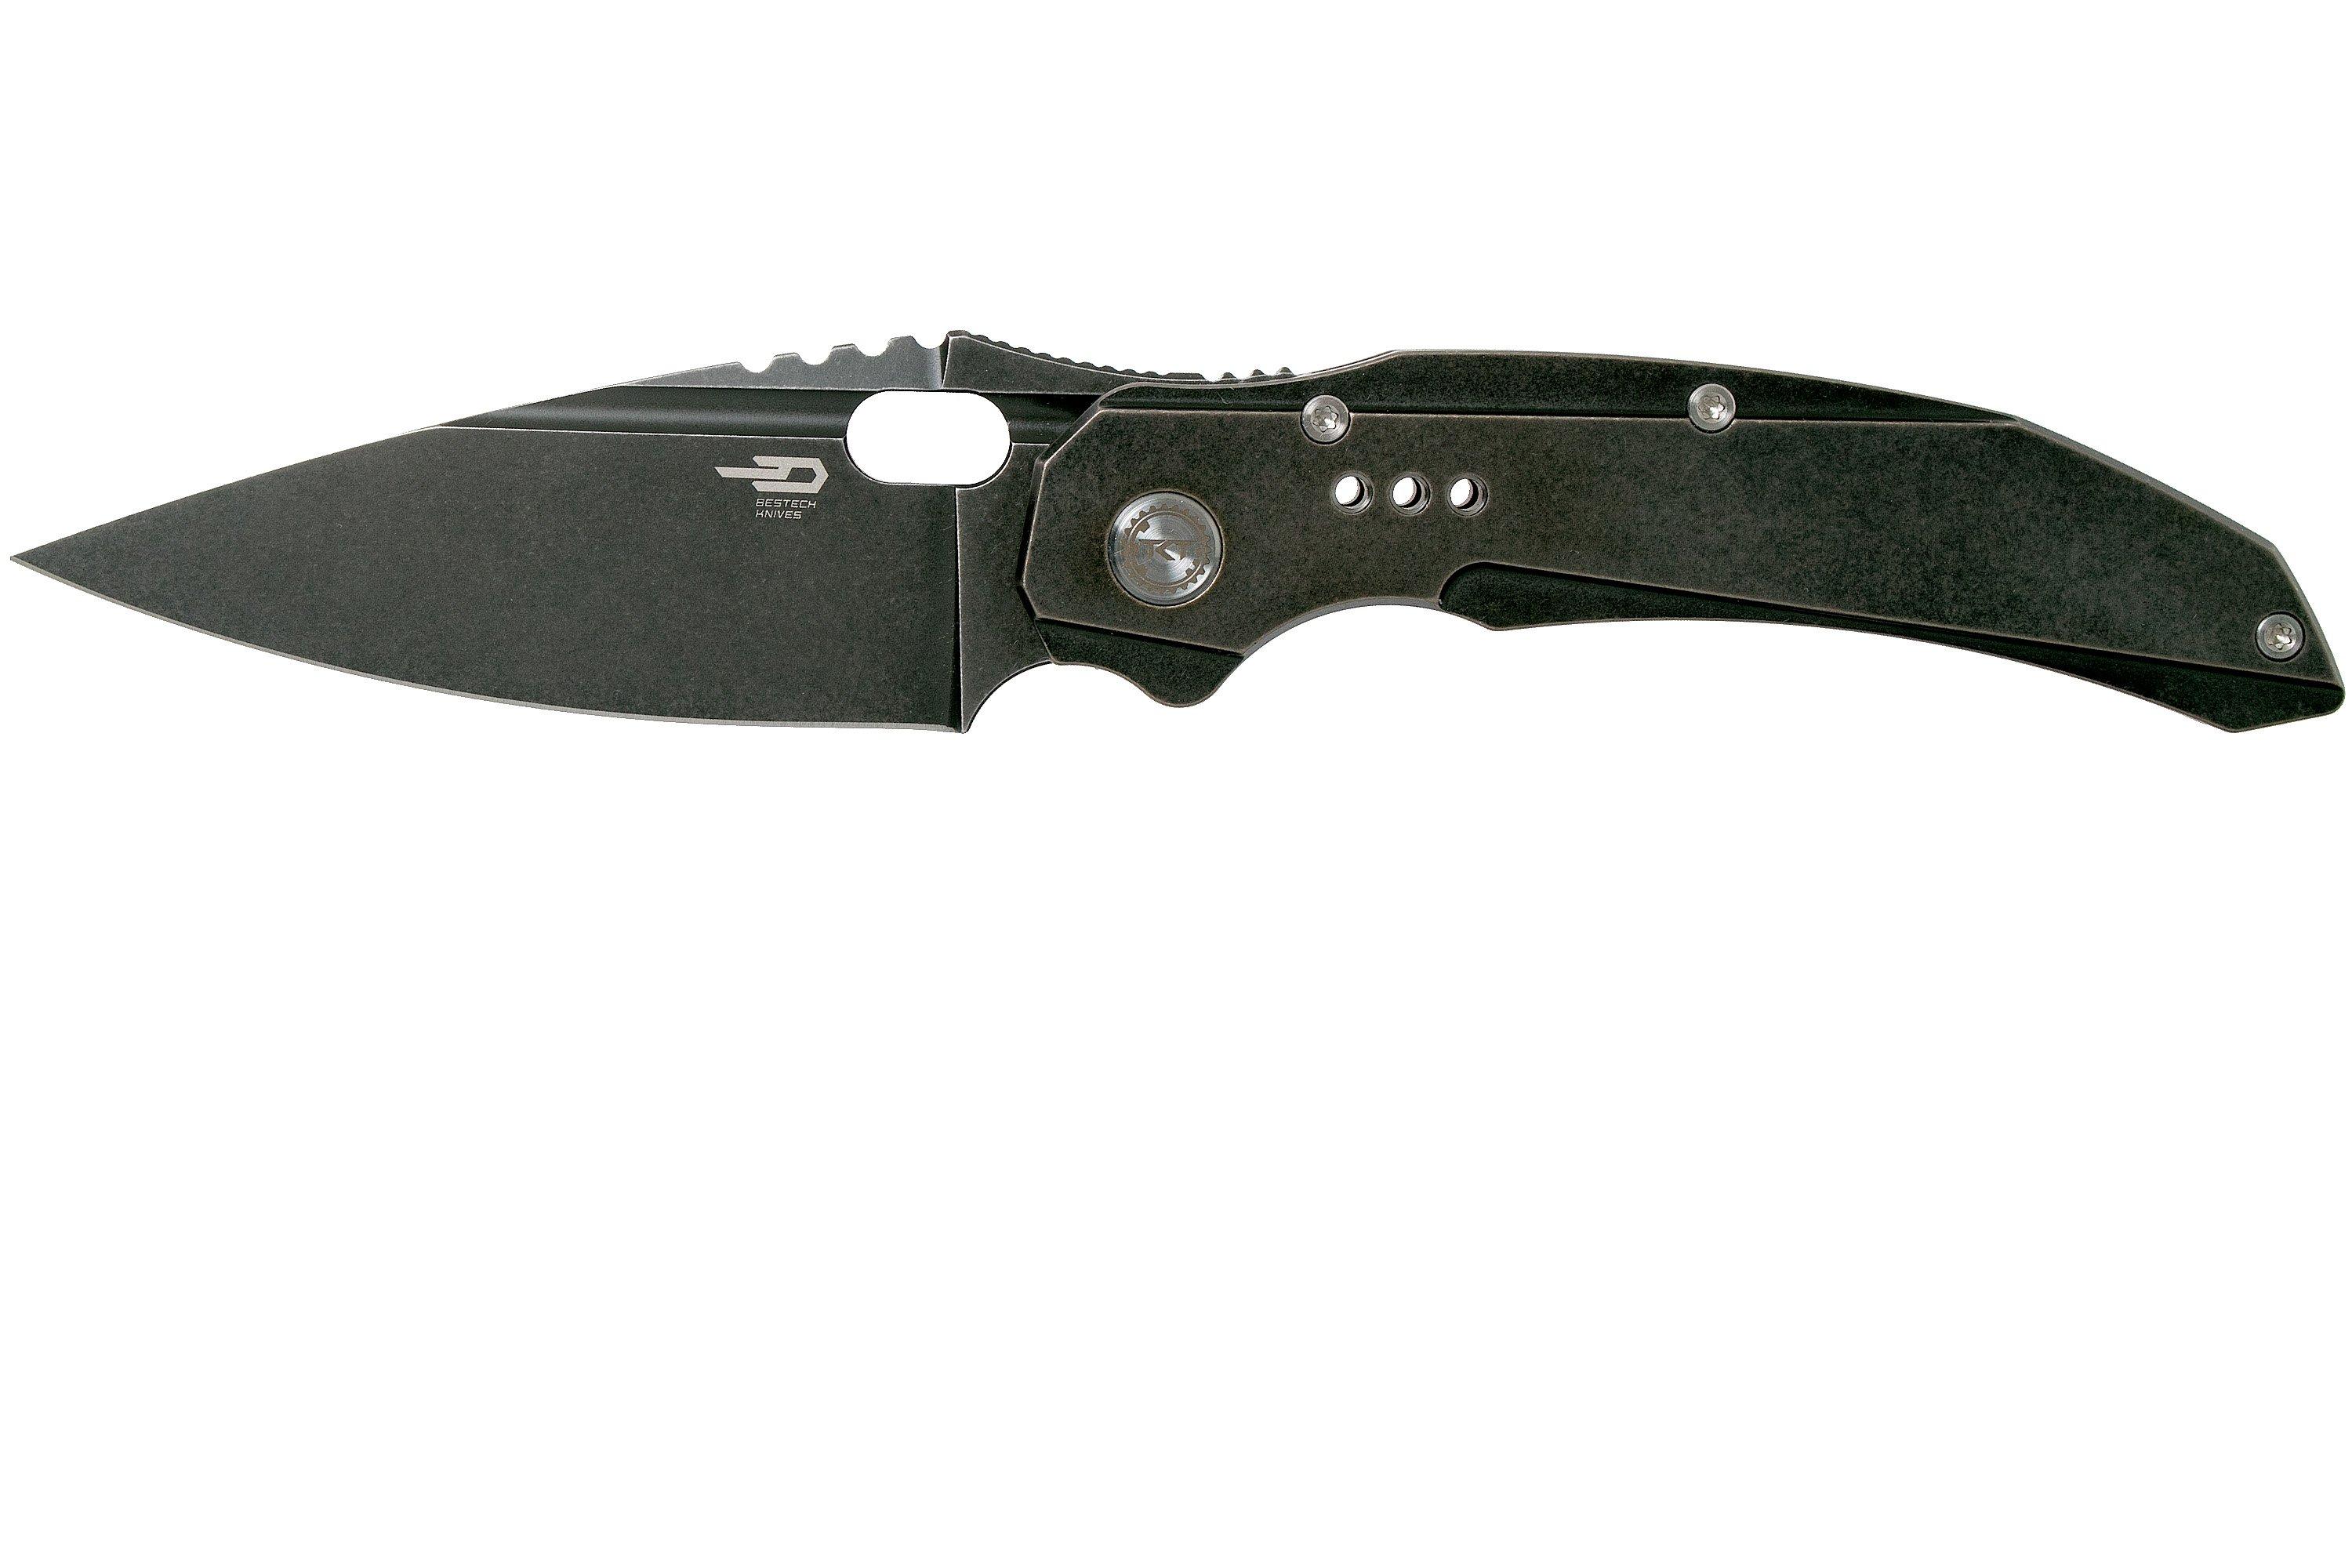 Bestech Exploit BT2005C Black Stonewash pocket knife | Advantageously ...